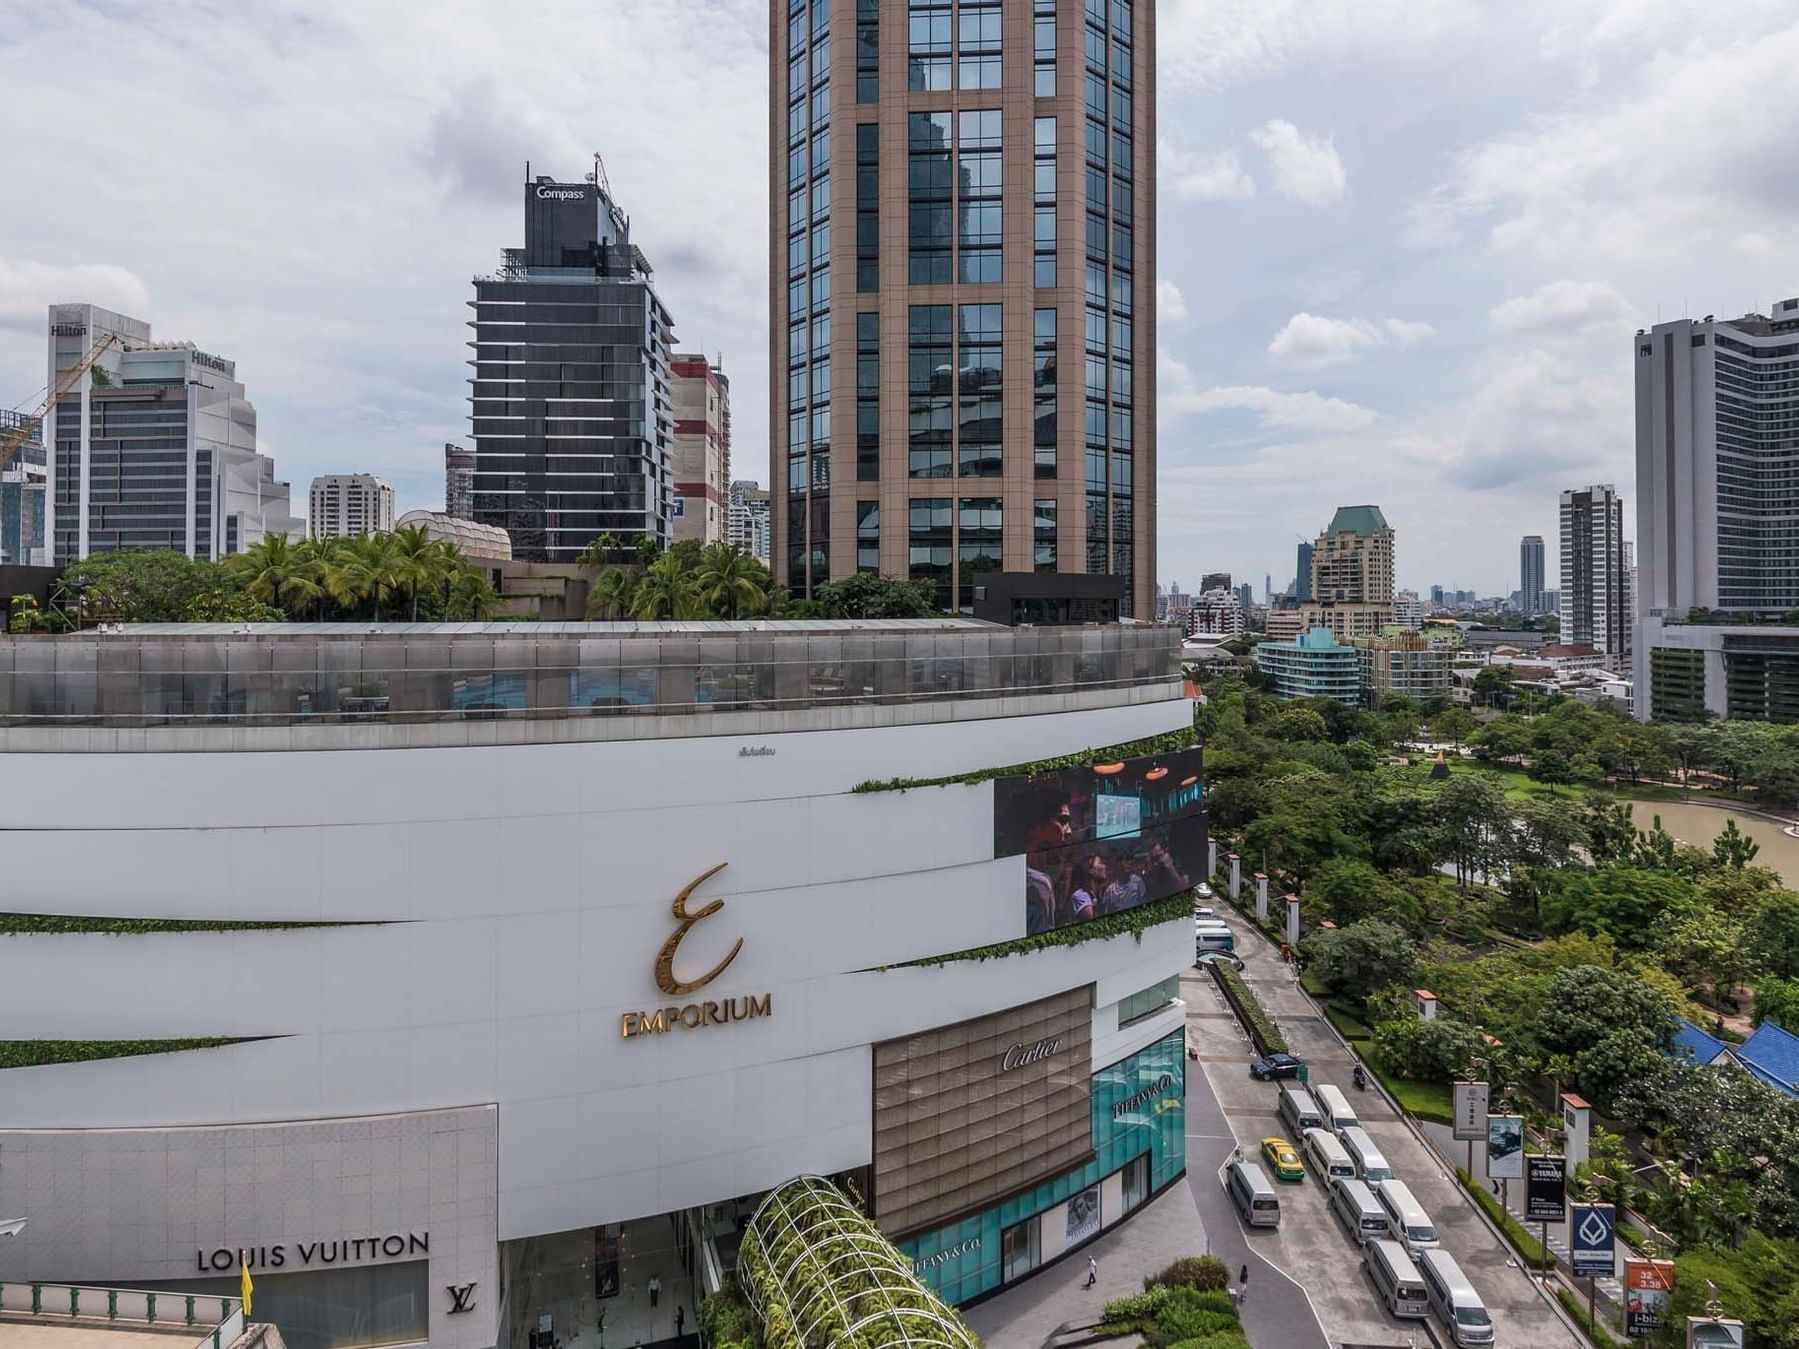 BANGKOK] Emporium Mall Luxury Shopping Mall On Sukhumvit Road